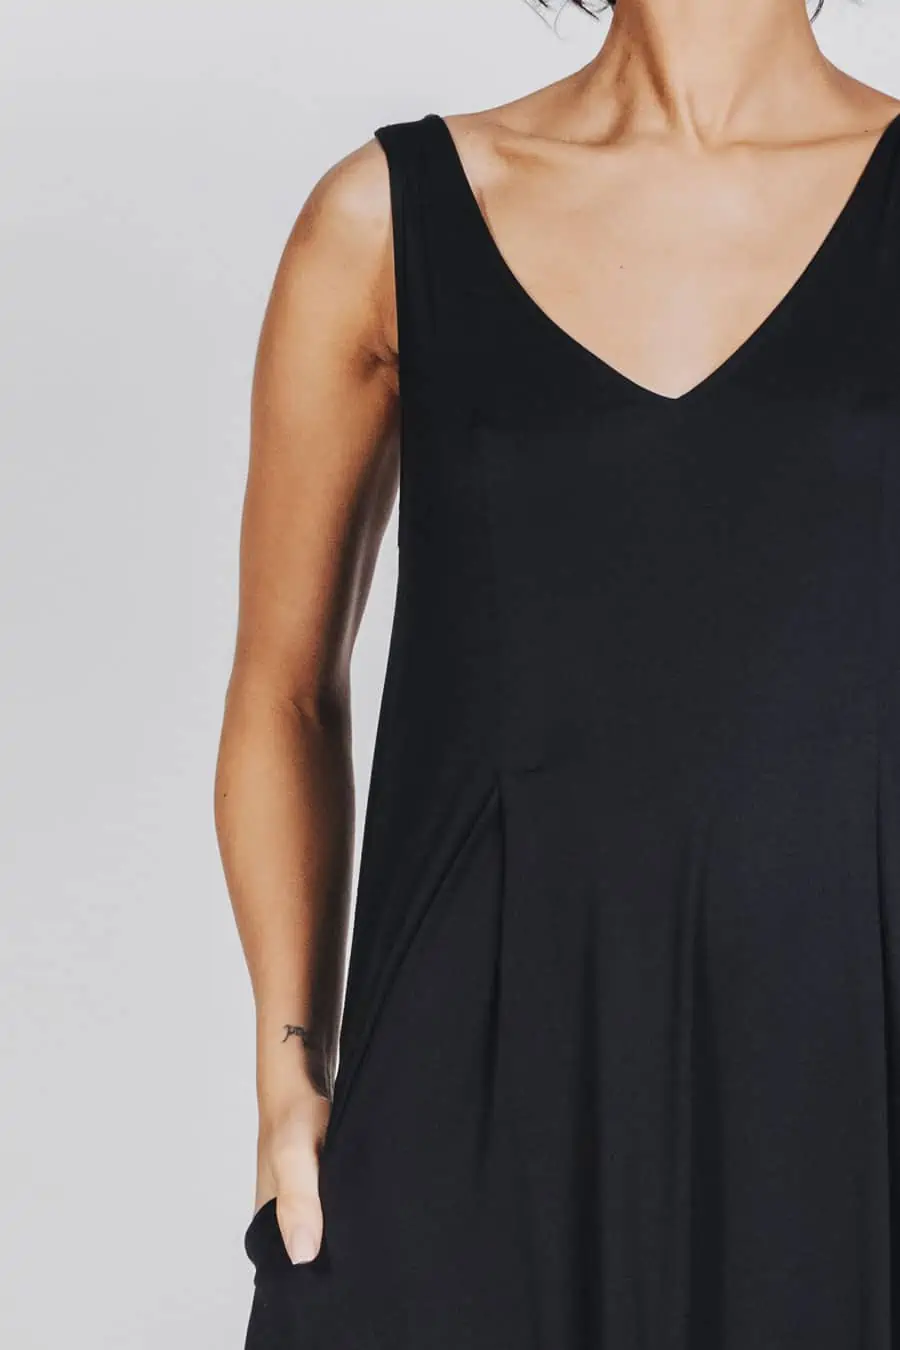 Deep White Black Modell SASHA langes Kleid schwarz, ärmelloses Sommerkleid mit V-Ausschnitt, Ansicht Detail V-Ausschnitt von vorne